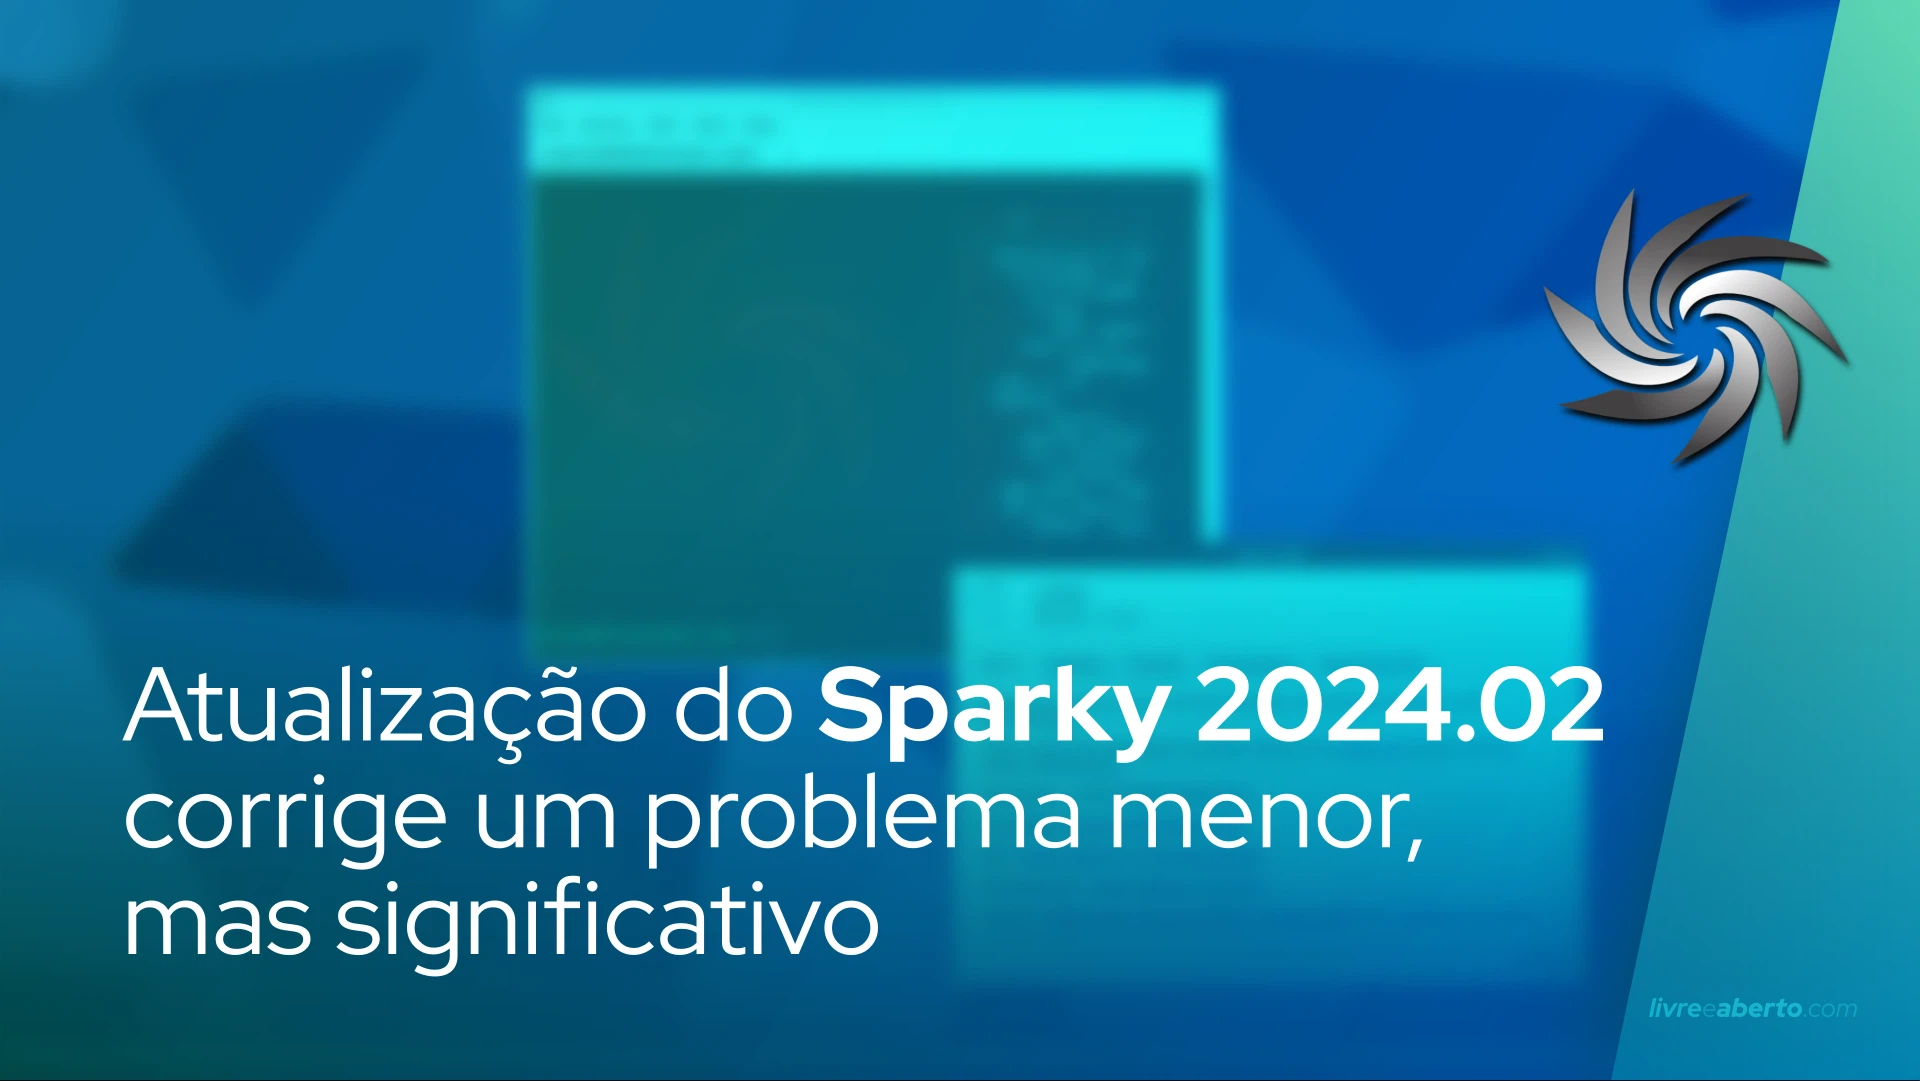 Atualização do Sparky 2024.02 corrige um problema menor, mas significativo